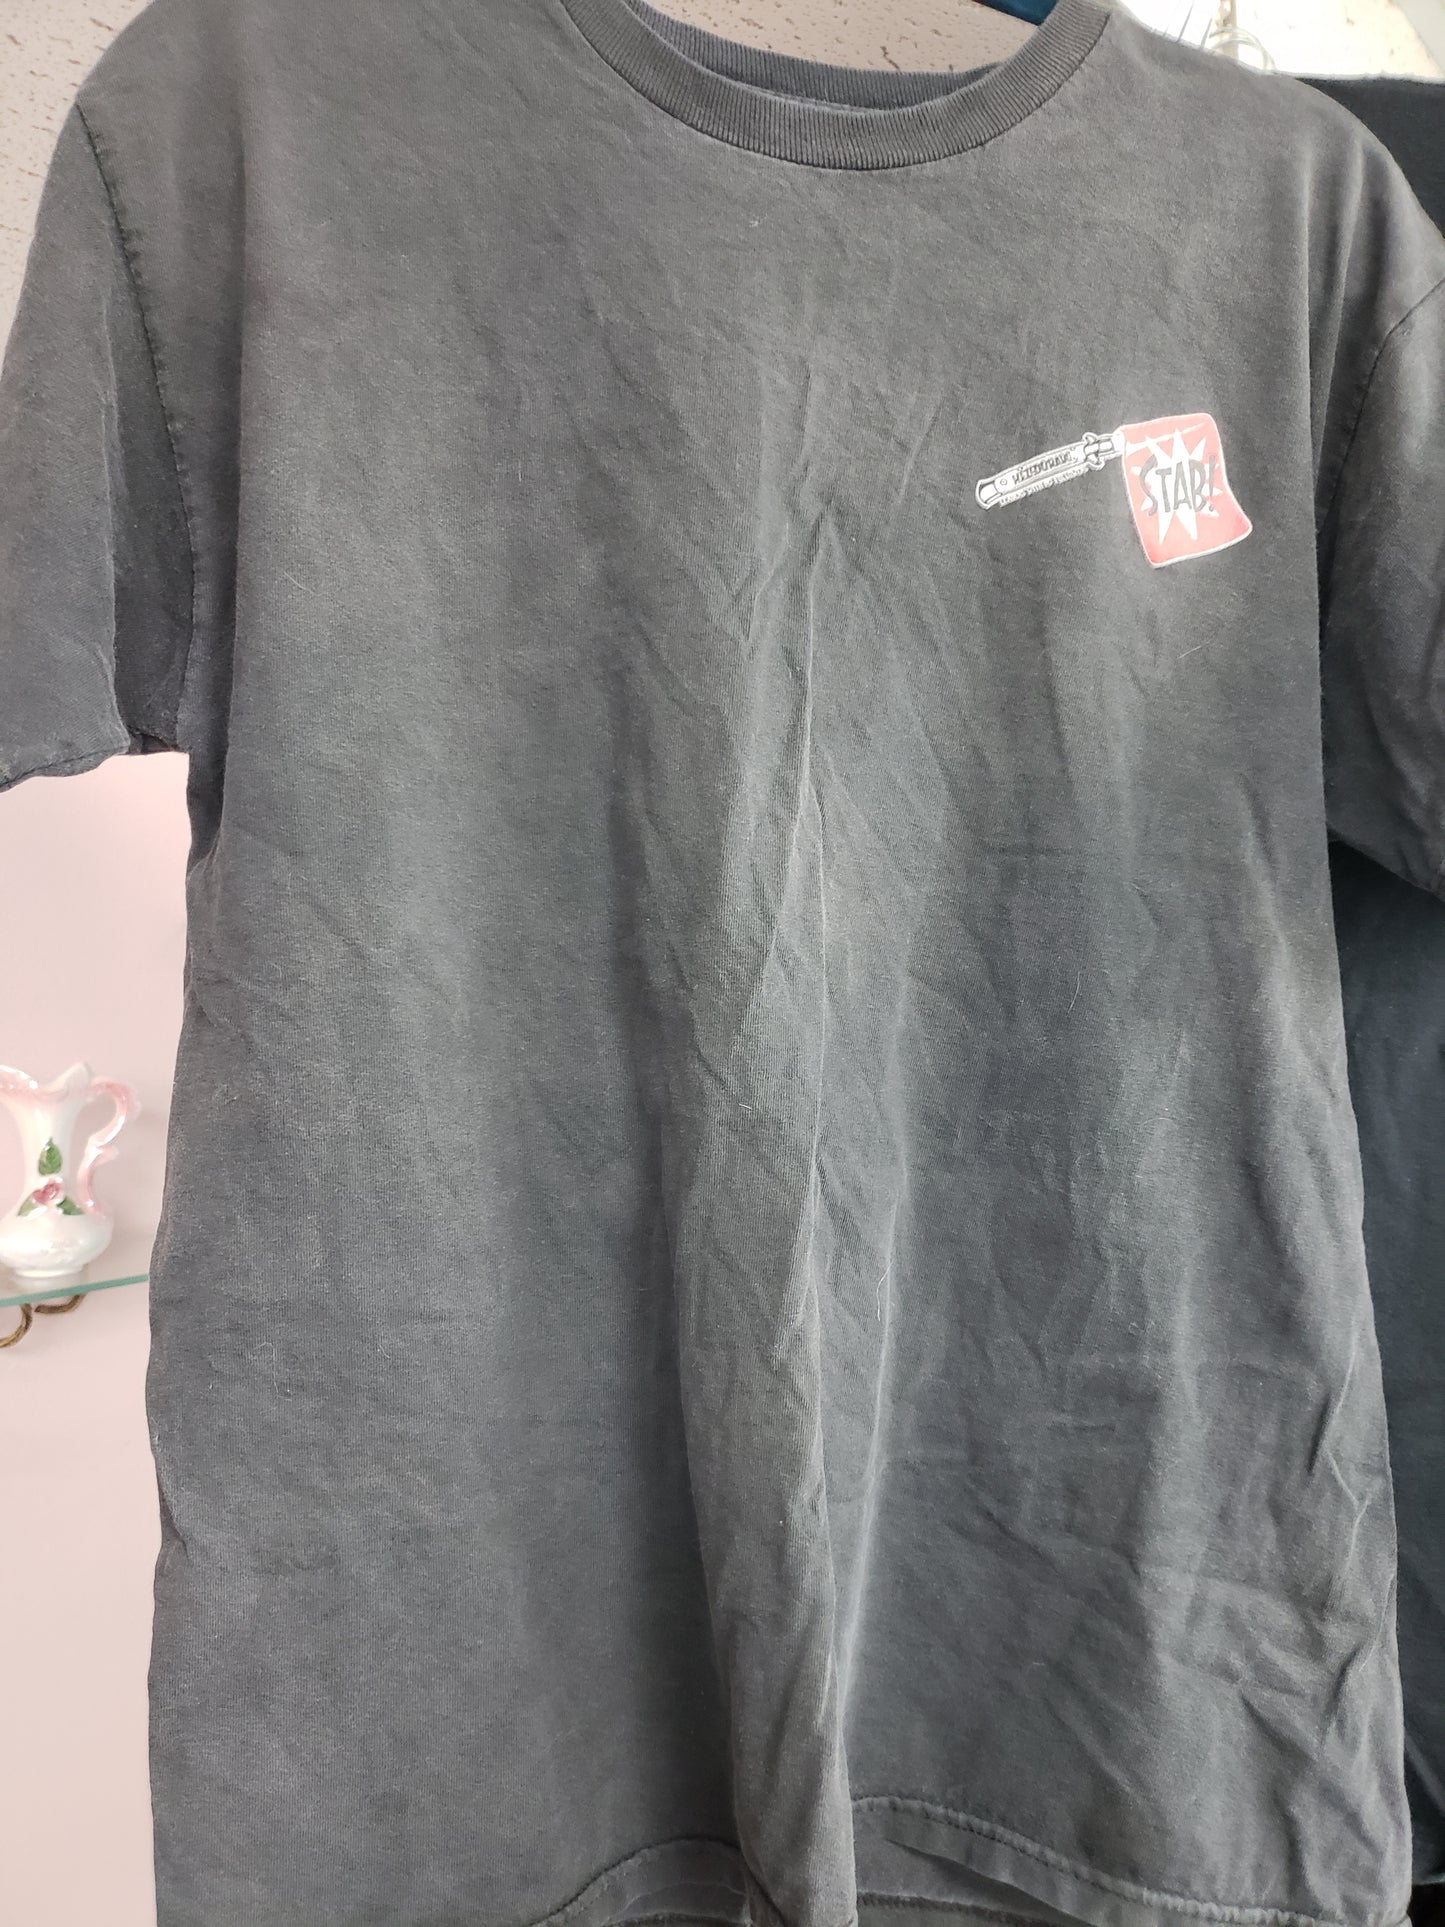 Helldorado Stab T-shirt size m